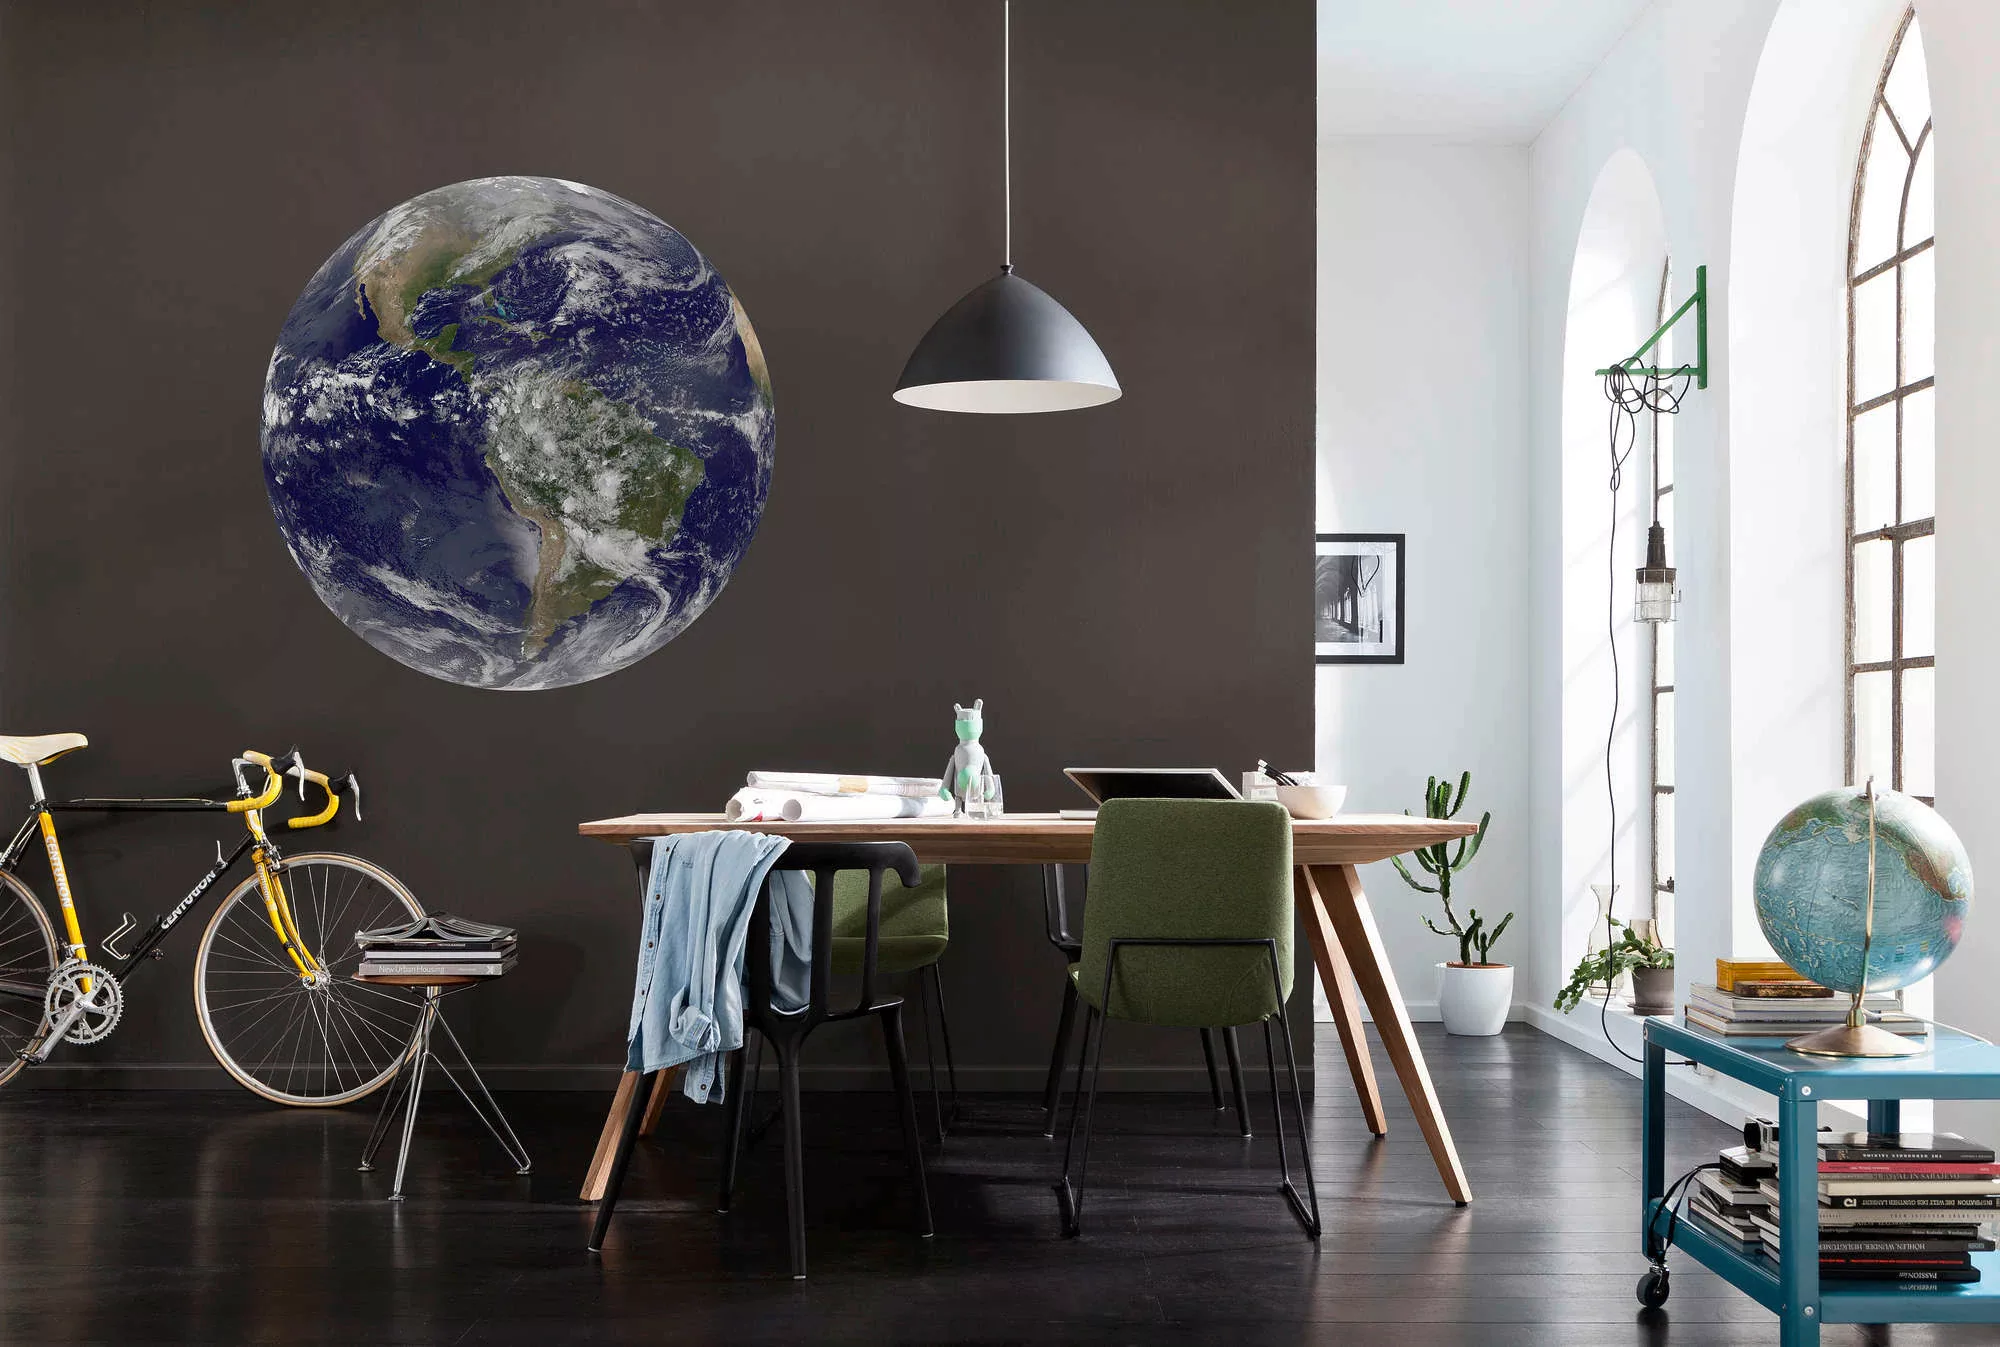 KOMAR Selbstklebende Vlies Fototapete/Wandtattoo - Earth - Größe 125 x 125 günstig online kaufen